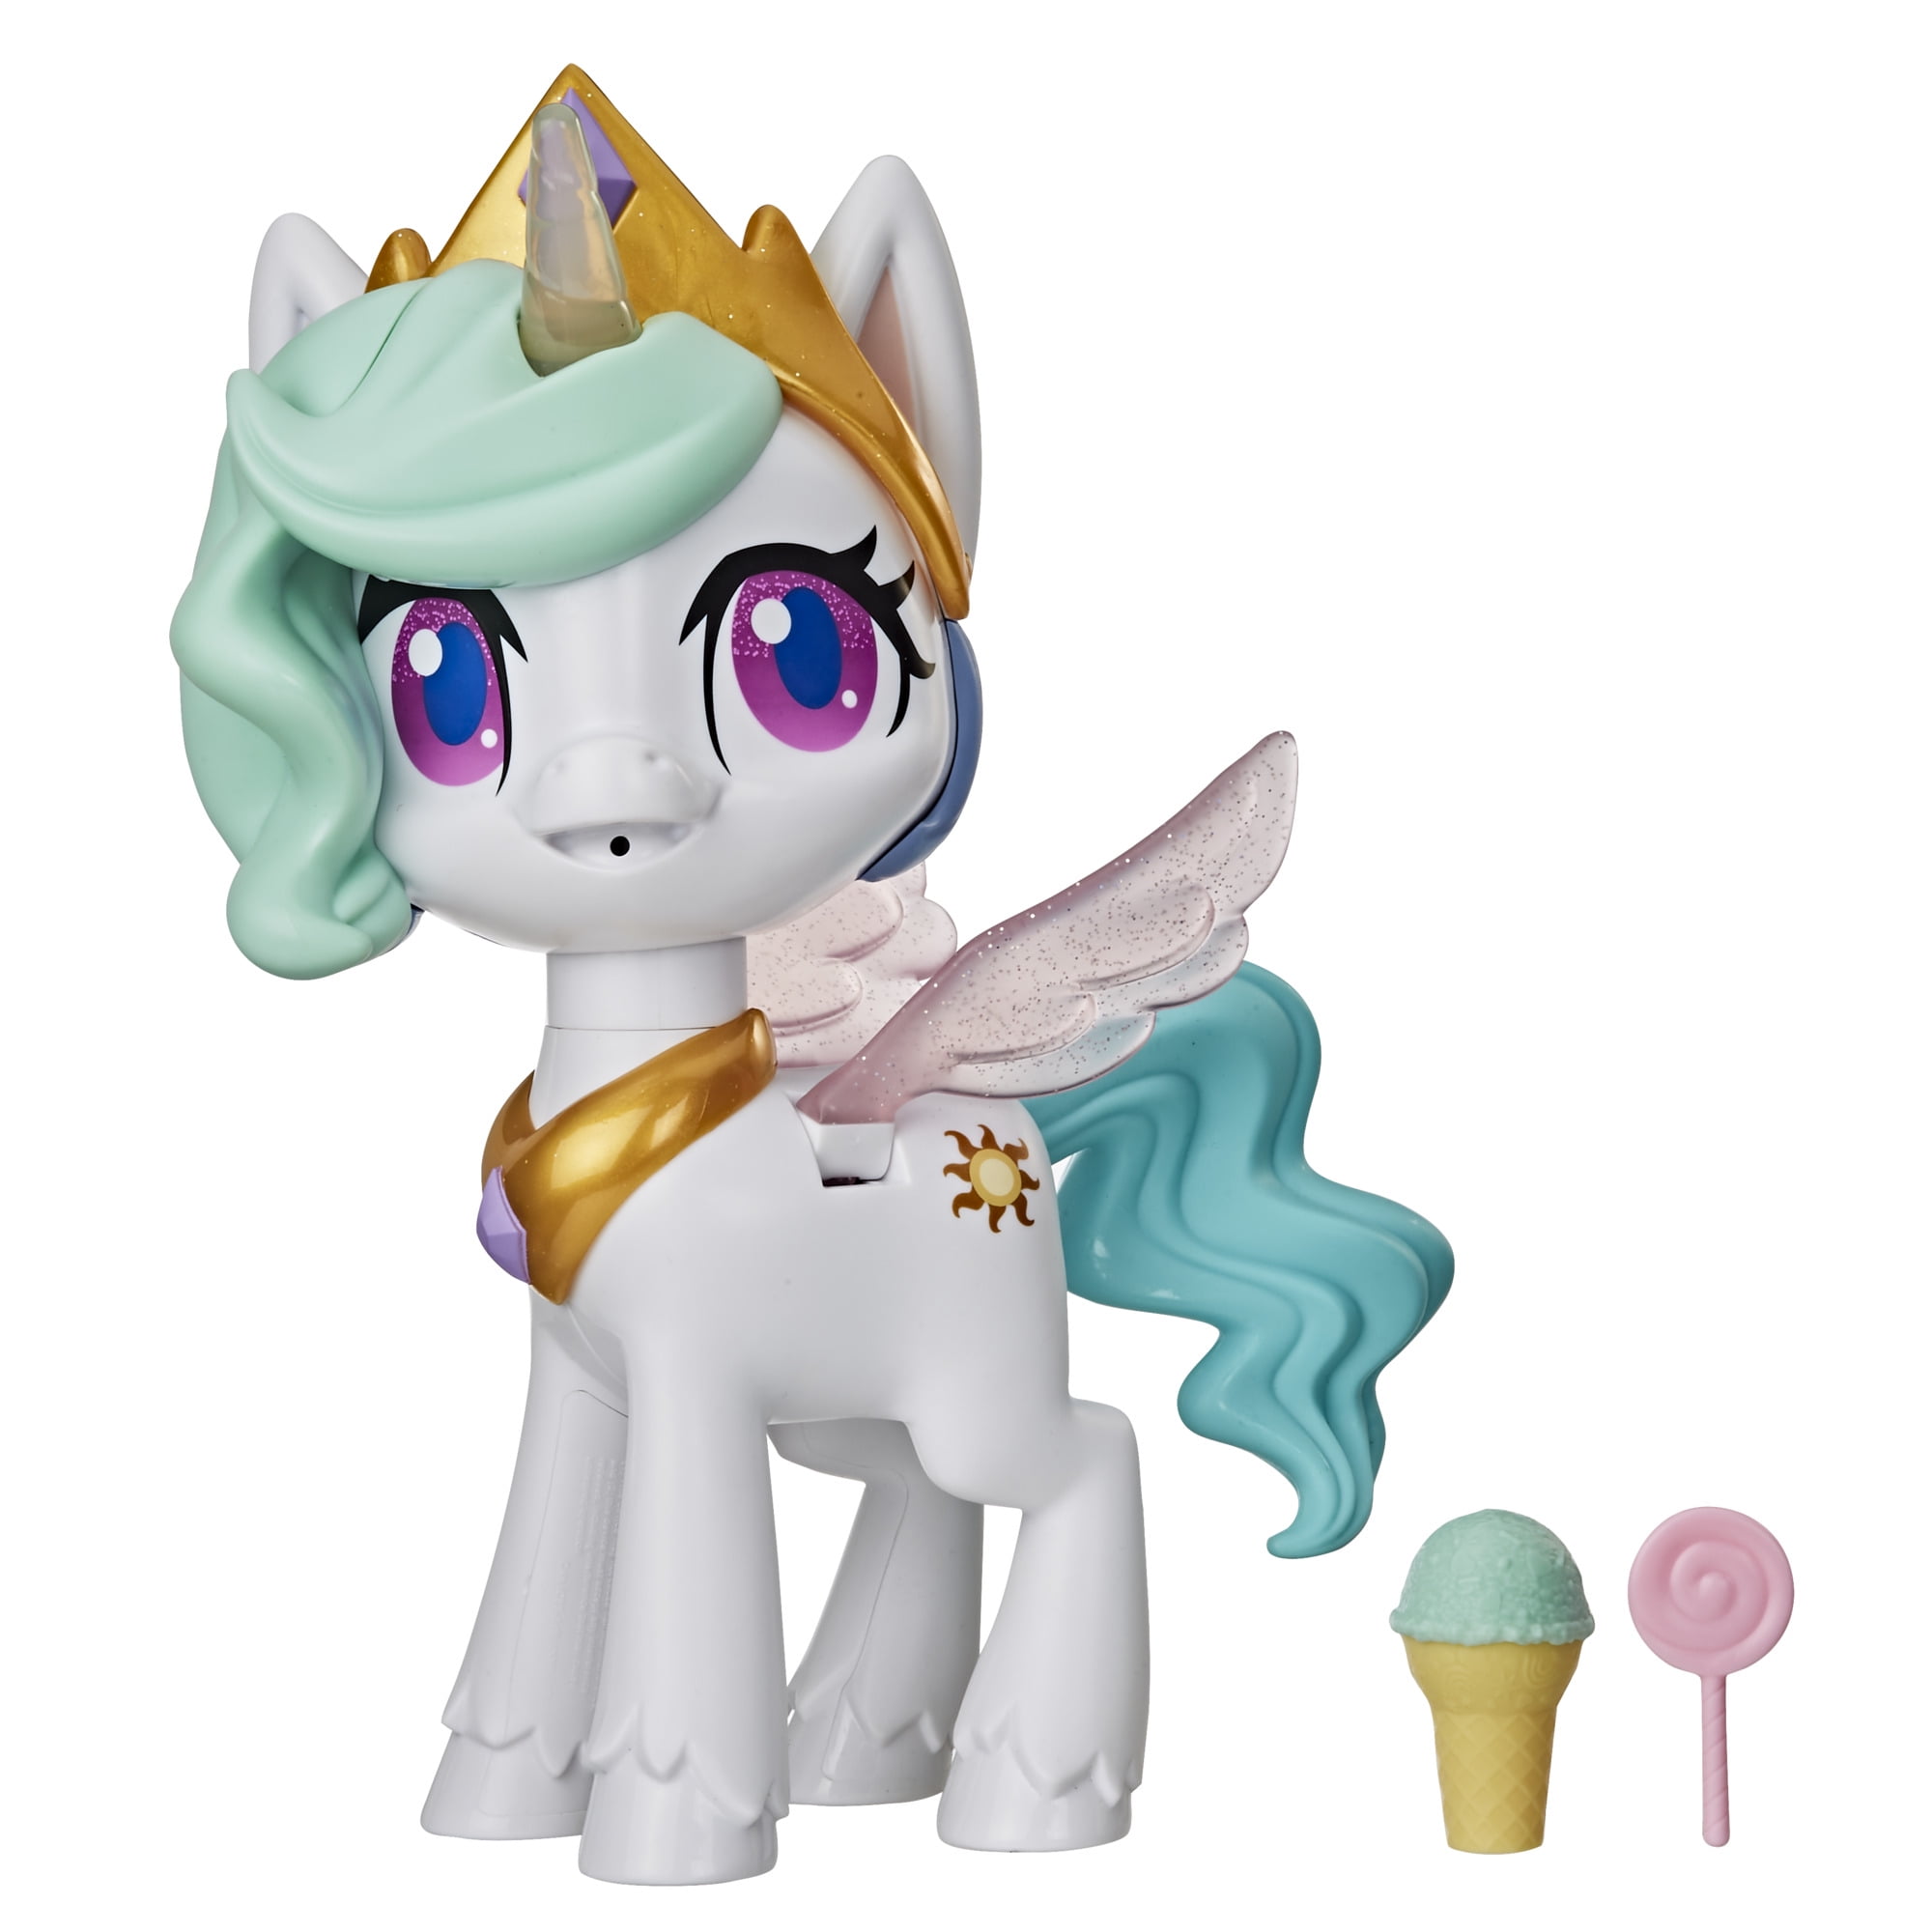 My little pony отзывы. Набор игровой my little Pony магический Единорог e91075l0. Принцесса Селестия Hasbro. My little Pony принцесса Селестия игрушка. Игровой набор Hasbro my little Pony принцесса Селестия.